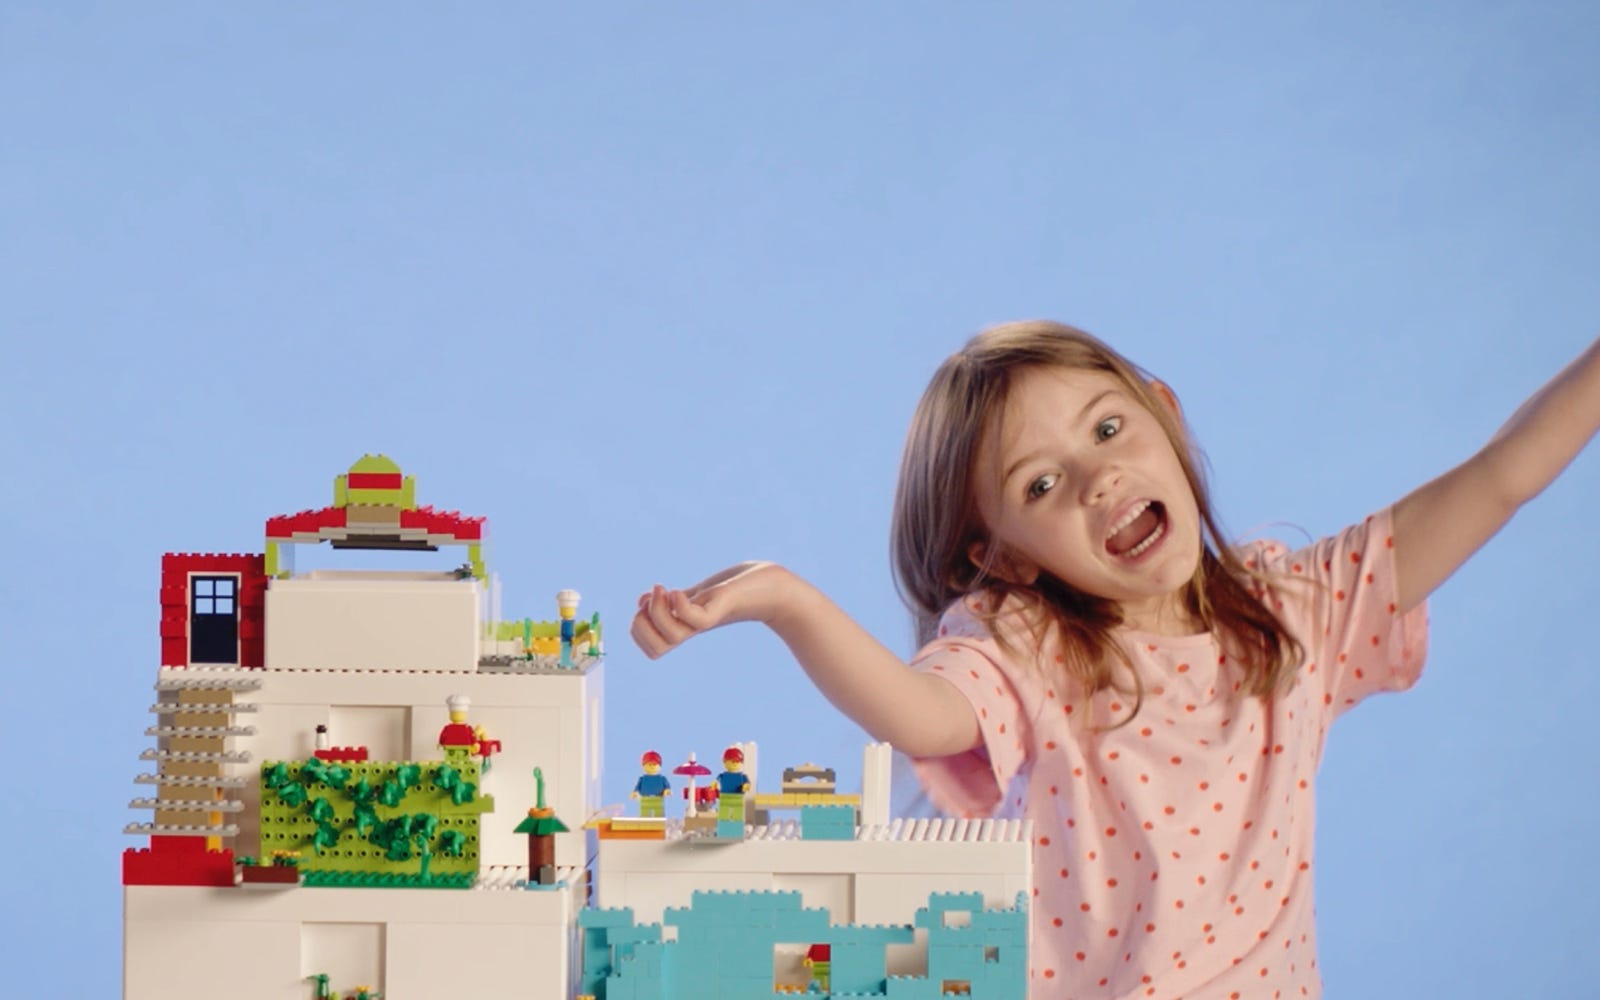 Ikea va proposer des boîtes à rangement spécialement conçues pour les Lego